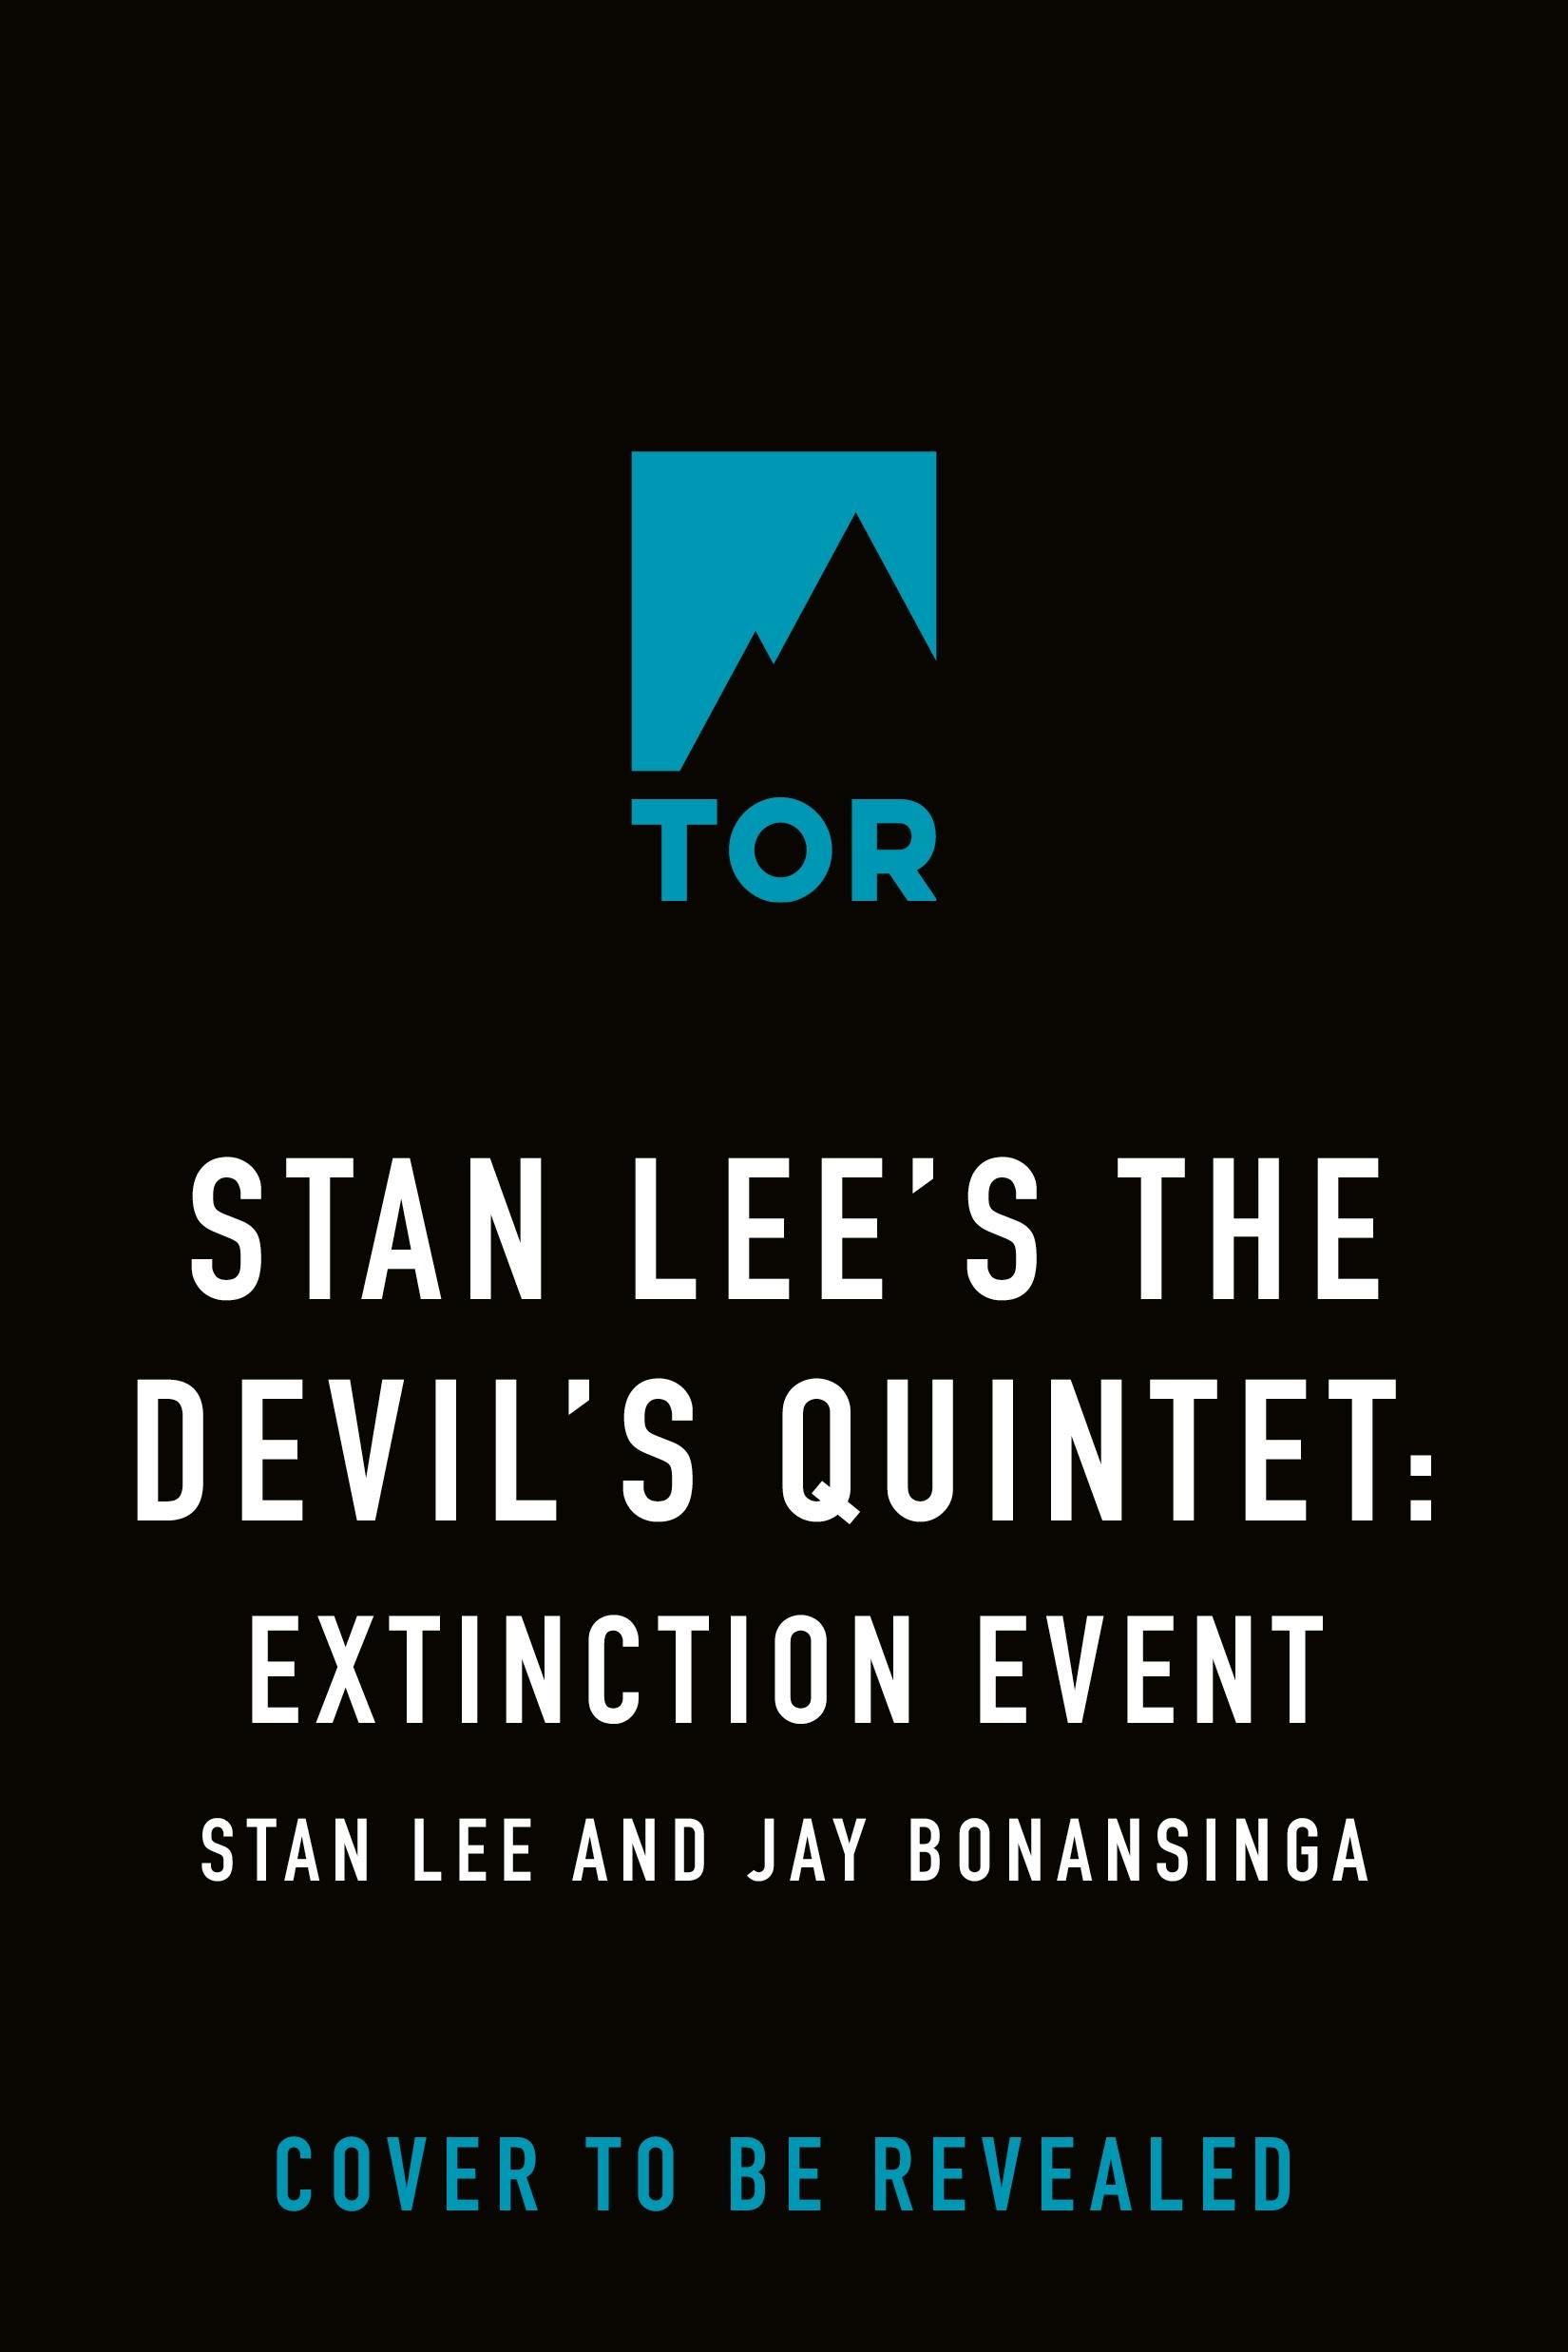 Image of Stan Lee's The Devil's Quintet: Extinction Event